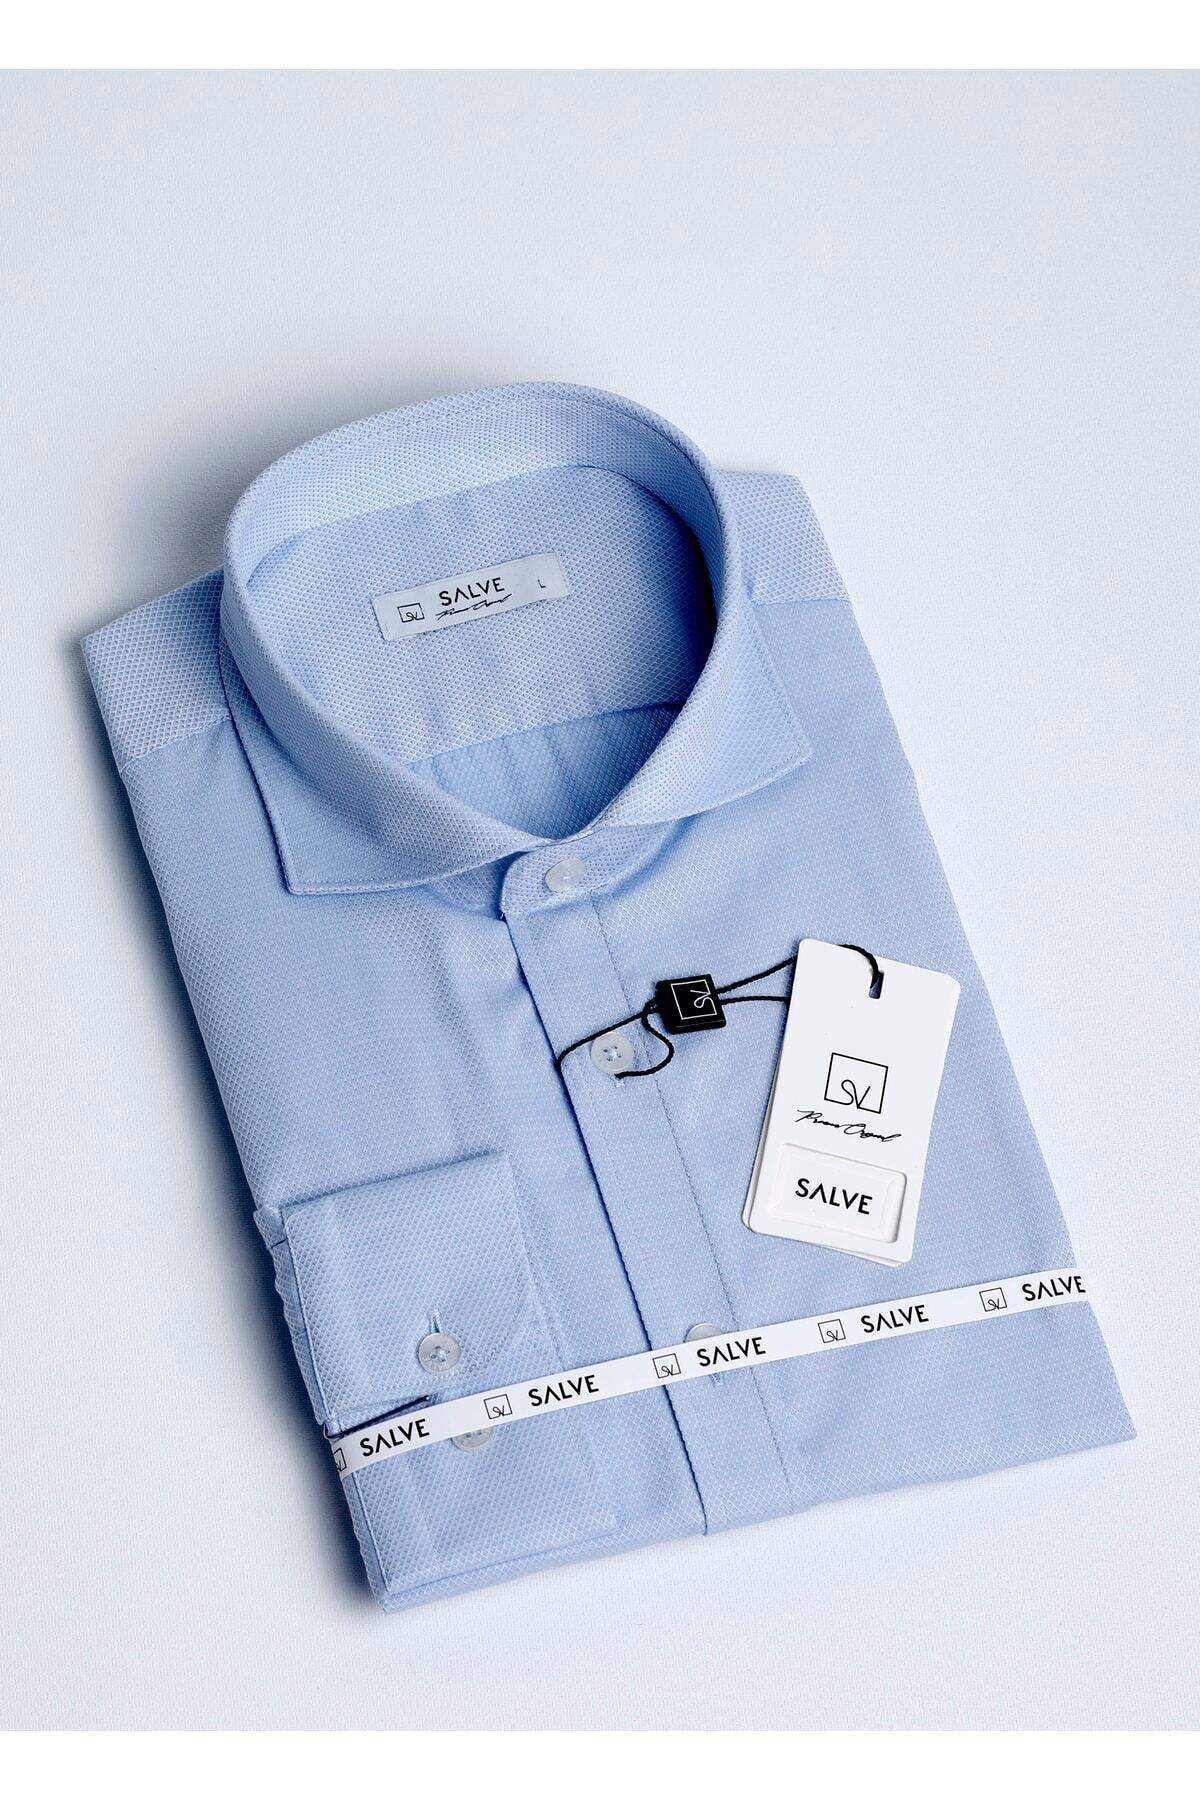 salve Erkek Gömlek %100 Pamuk Slim Fit Armürlü Desen Italyan Yaka Mavi Renkli Casual Giyim 22135